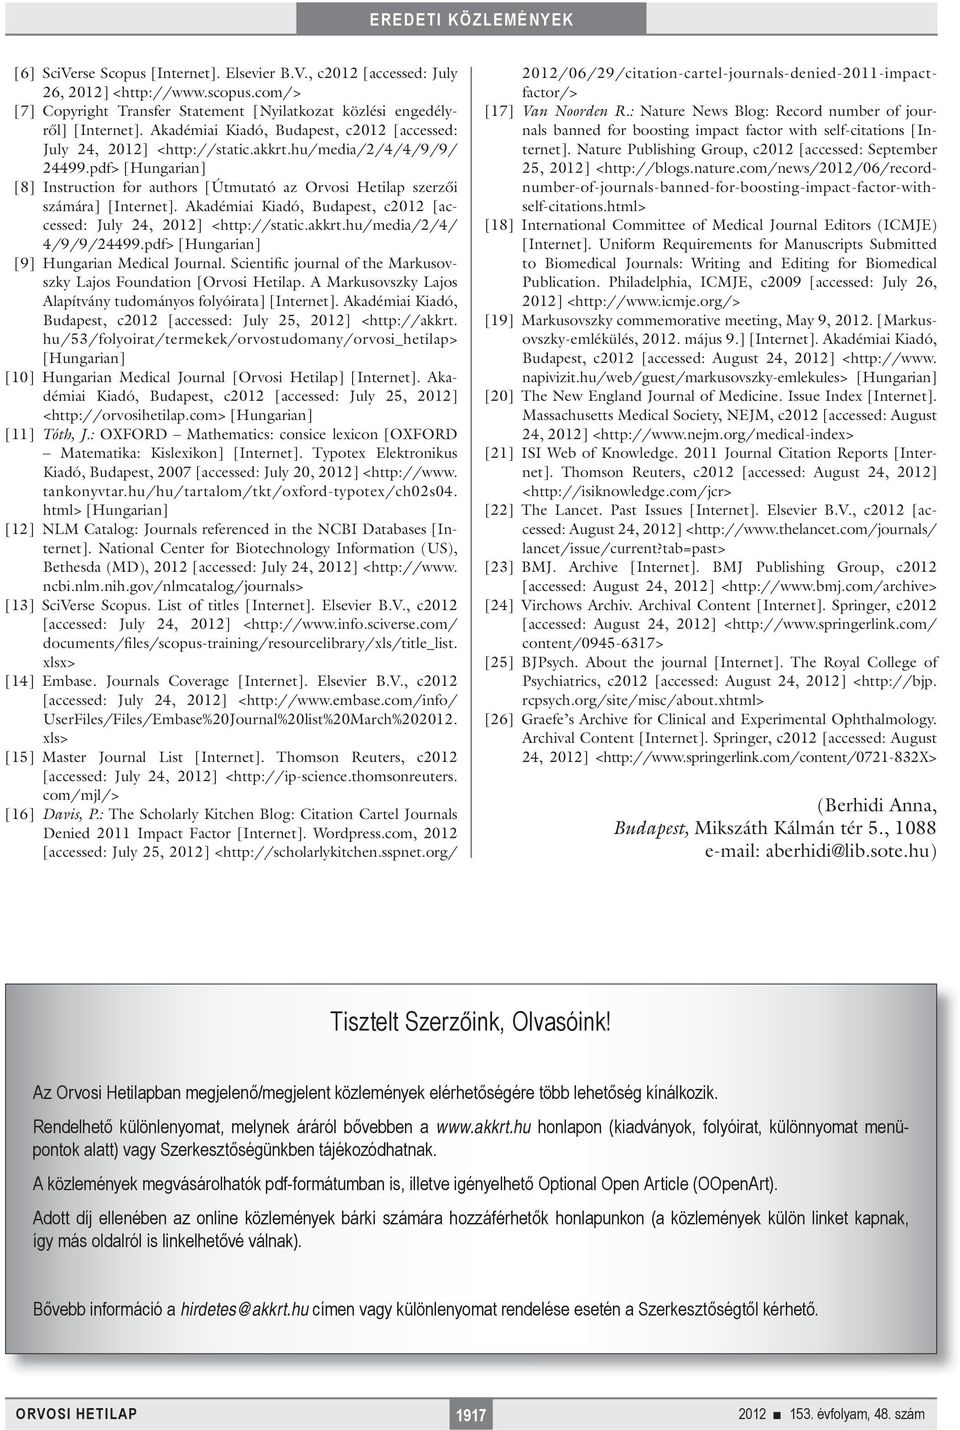 pdf> [Hungarian] [8] Instruction for authors [Útmutató az Orvosi Hetilap szerzői számára] [Internet]. Akadémiai Kiadó, Budapest, c2012 [accessed: July 24, 2012] <http://static.akkrt.